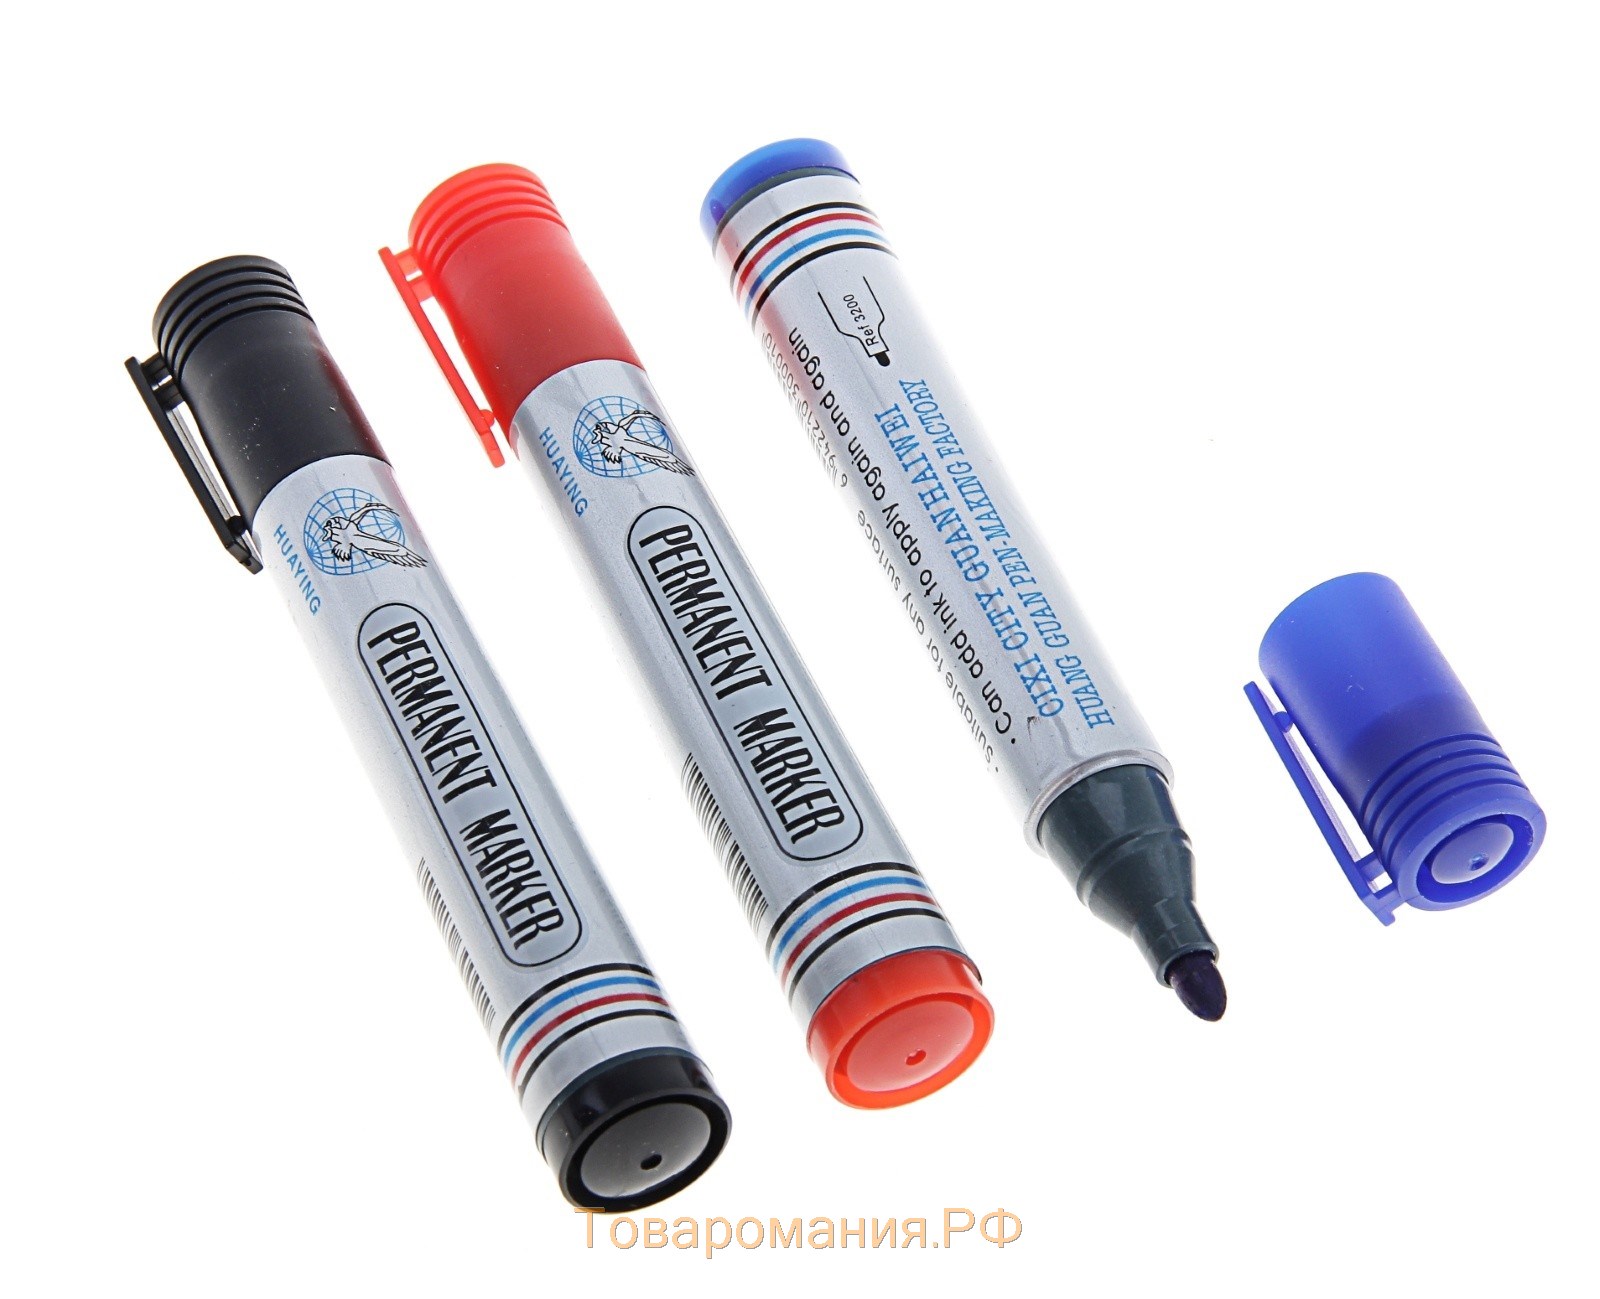 Набор перманентных маркеров, 3 цвета: синий, красный, чёрный, наконечник круглый 4 мм, на блистере